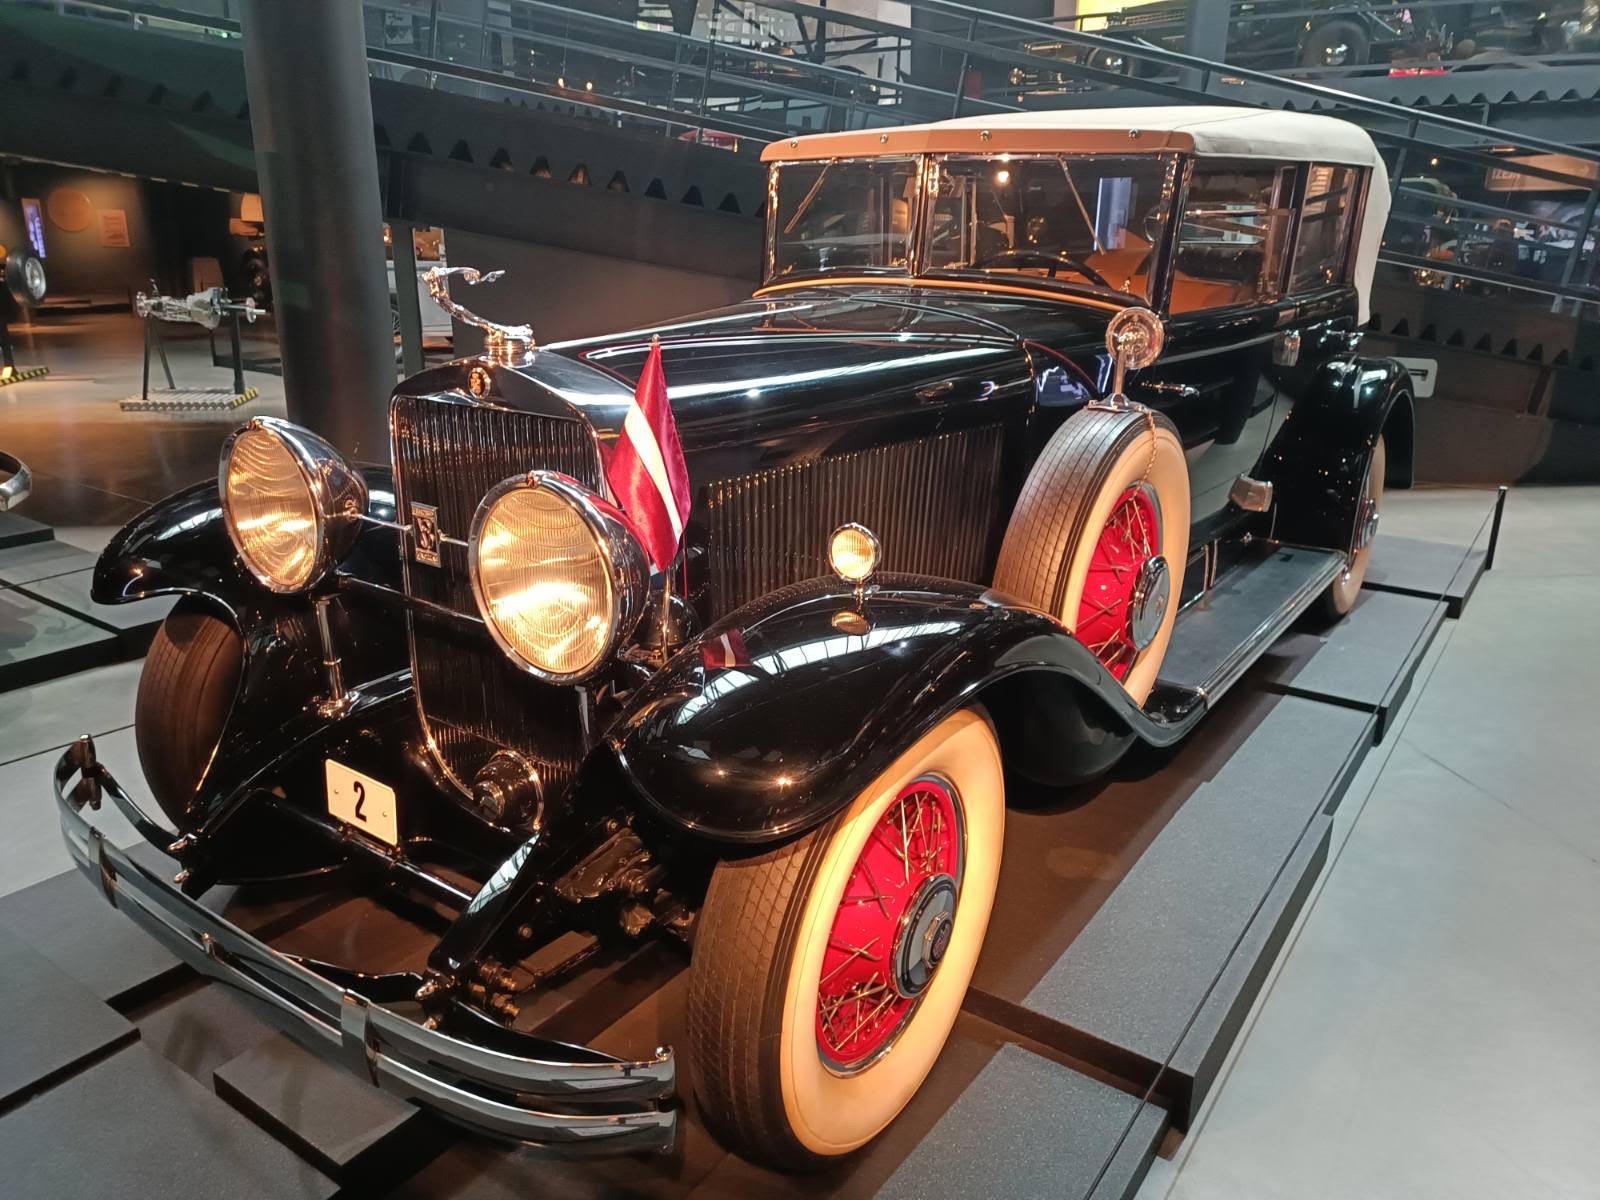 Στο μουσείο η σπάνια Cadillac του Ούλμανις